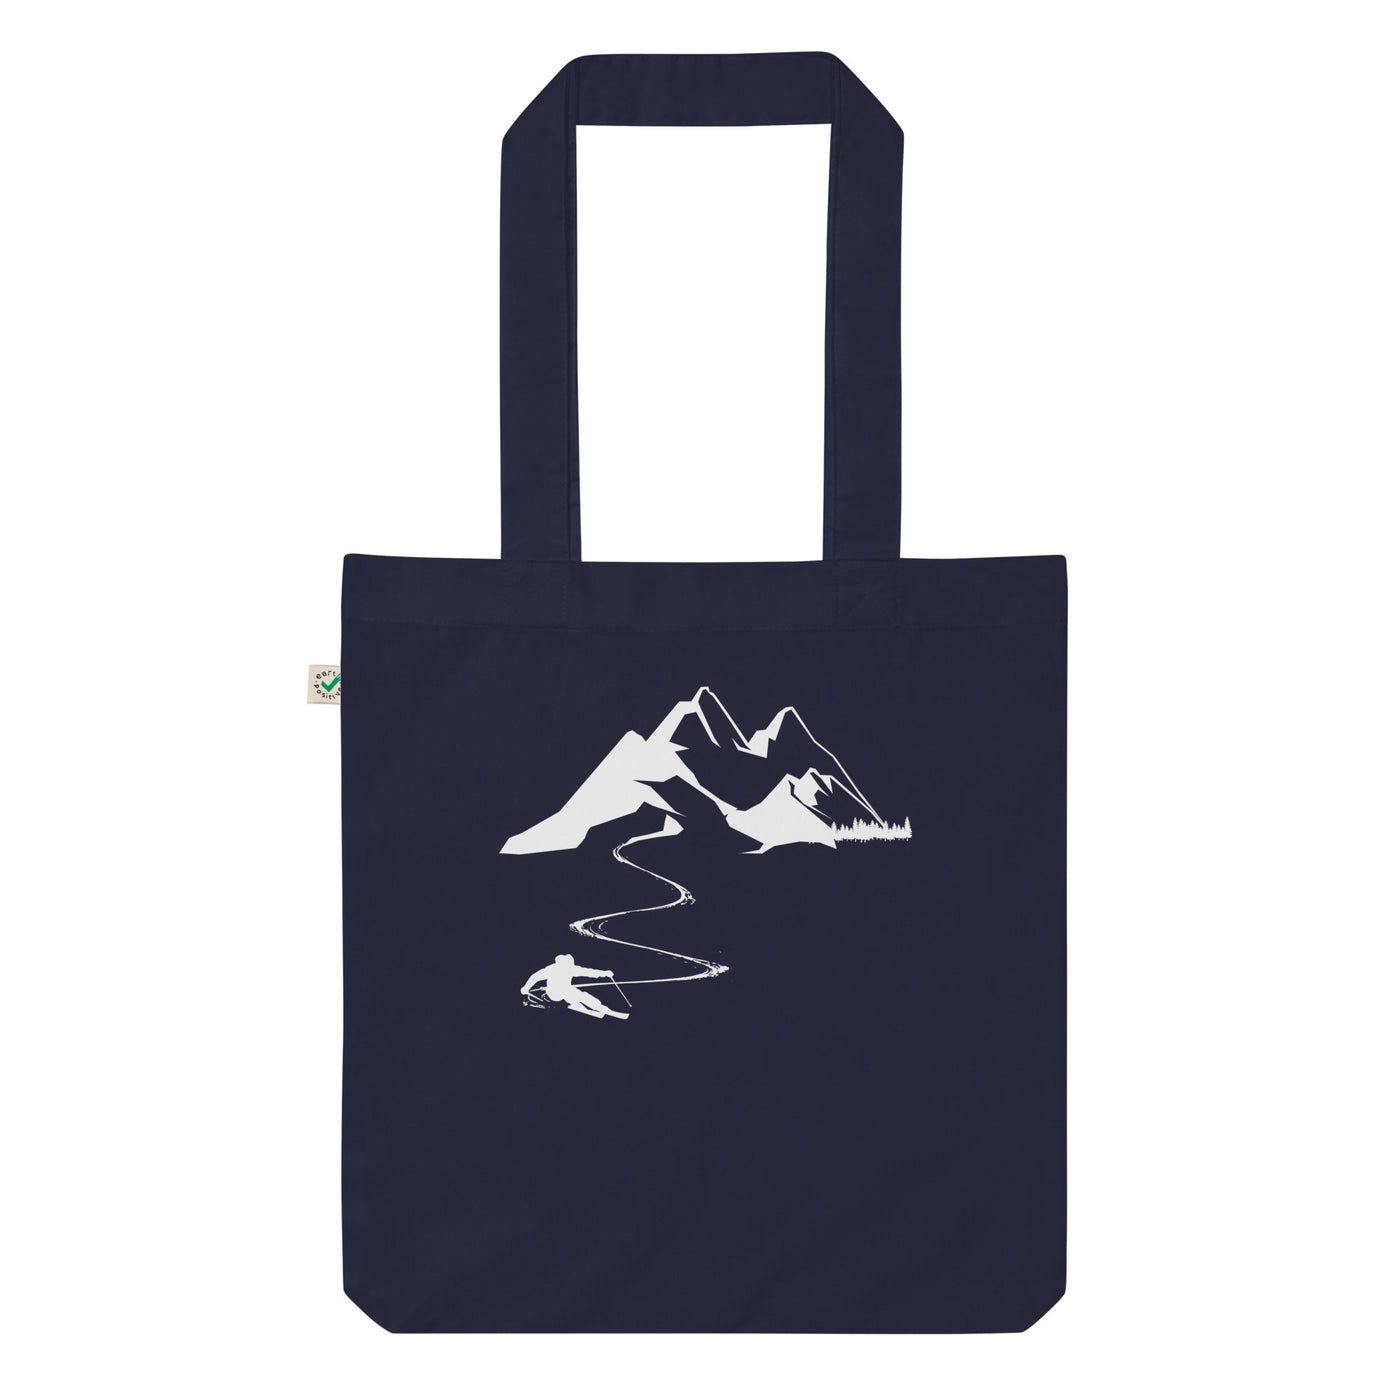 Skisüchtig - Organic Einkaufstasche klettern ski